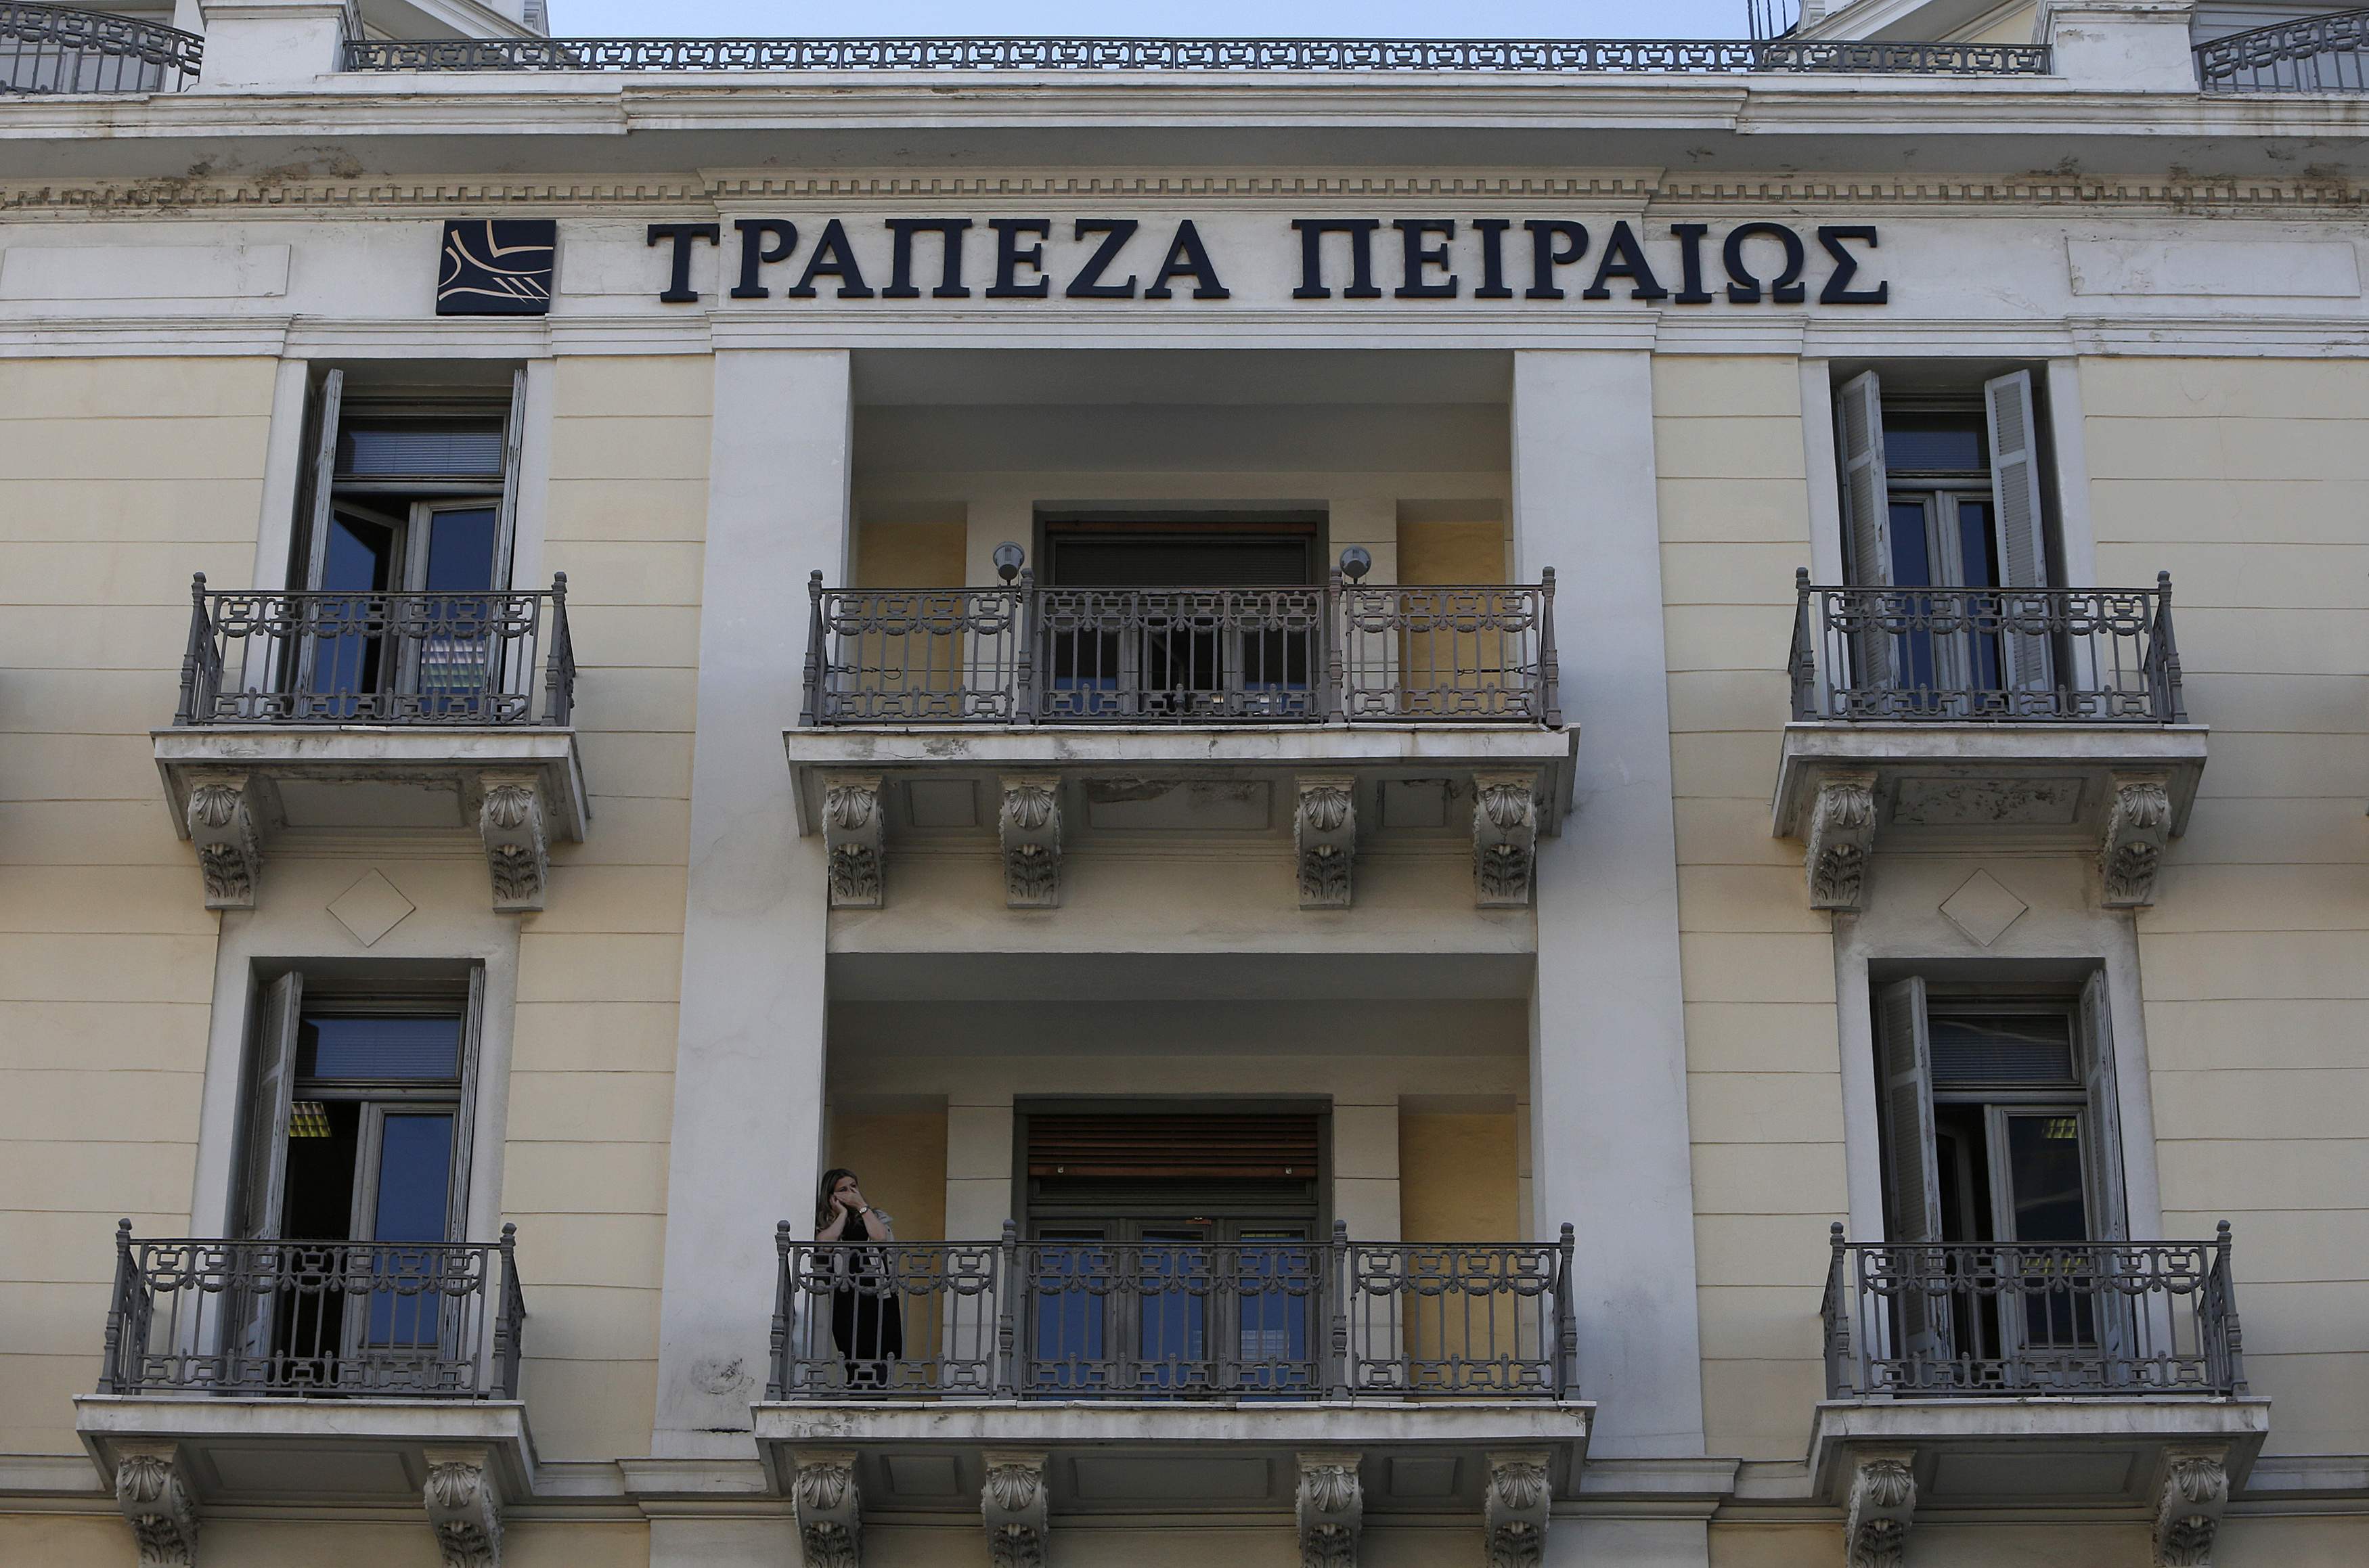 Υπεγράφη η συμφωνία Πειραιώς με τις Κυπριακές τράπεζες – Ανοικτά αύριο τα υποκαταστήματα στην Ελλάδα!